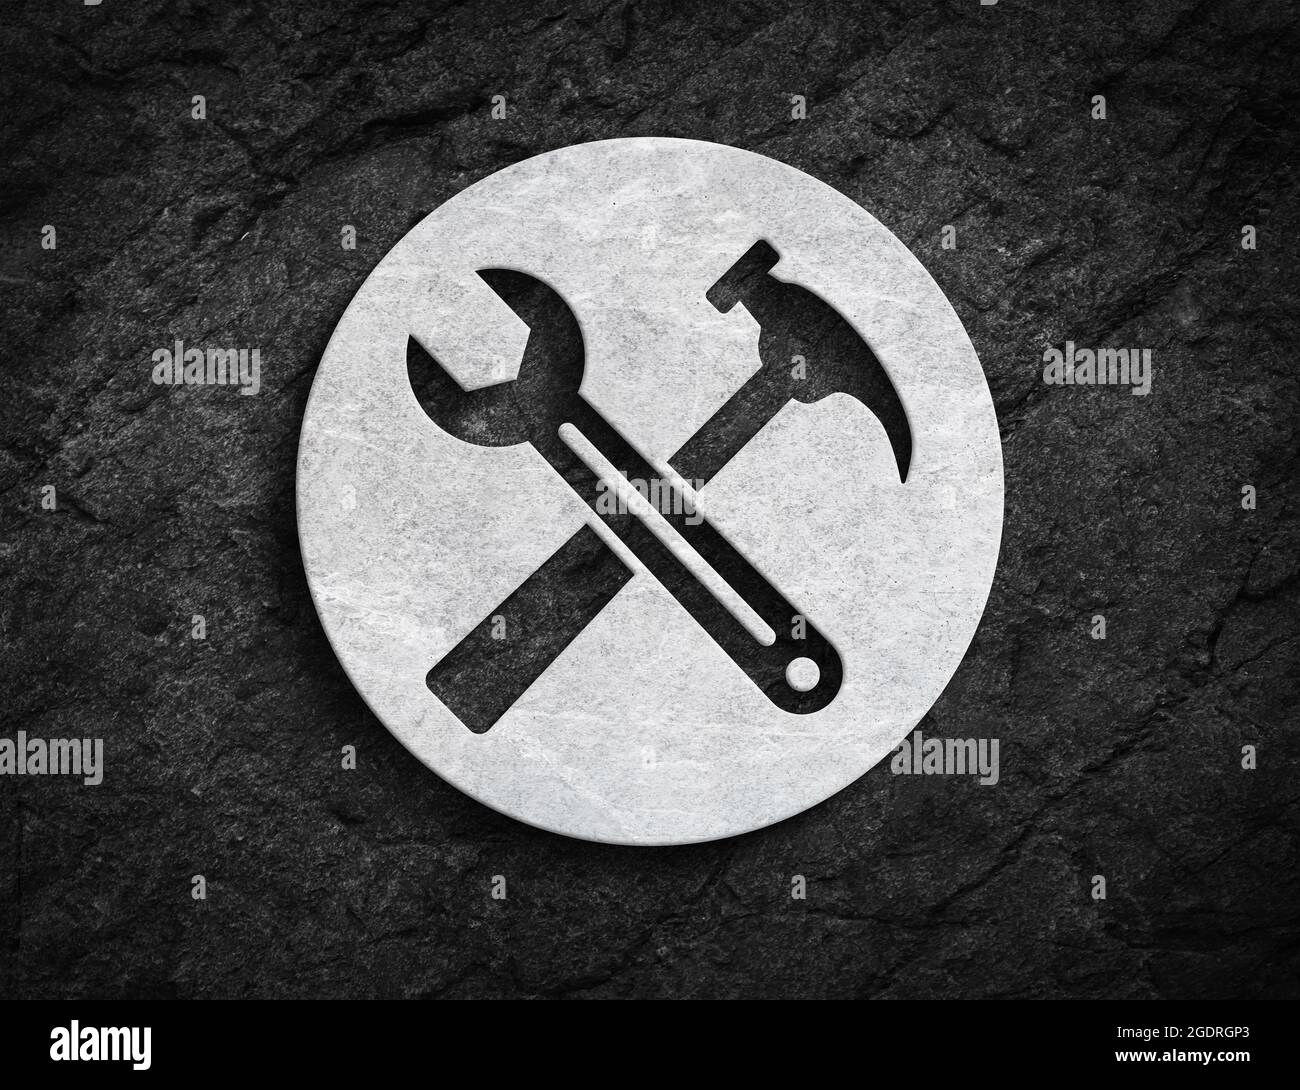 Simbolo del pulsante della pietra bianca della chiave e del martello per la riparazione meccanica e il simbolo di manutenzione sullo sfondo scuro della parete in pietra Foto Stock